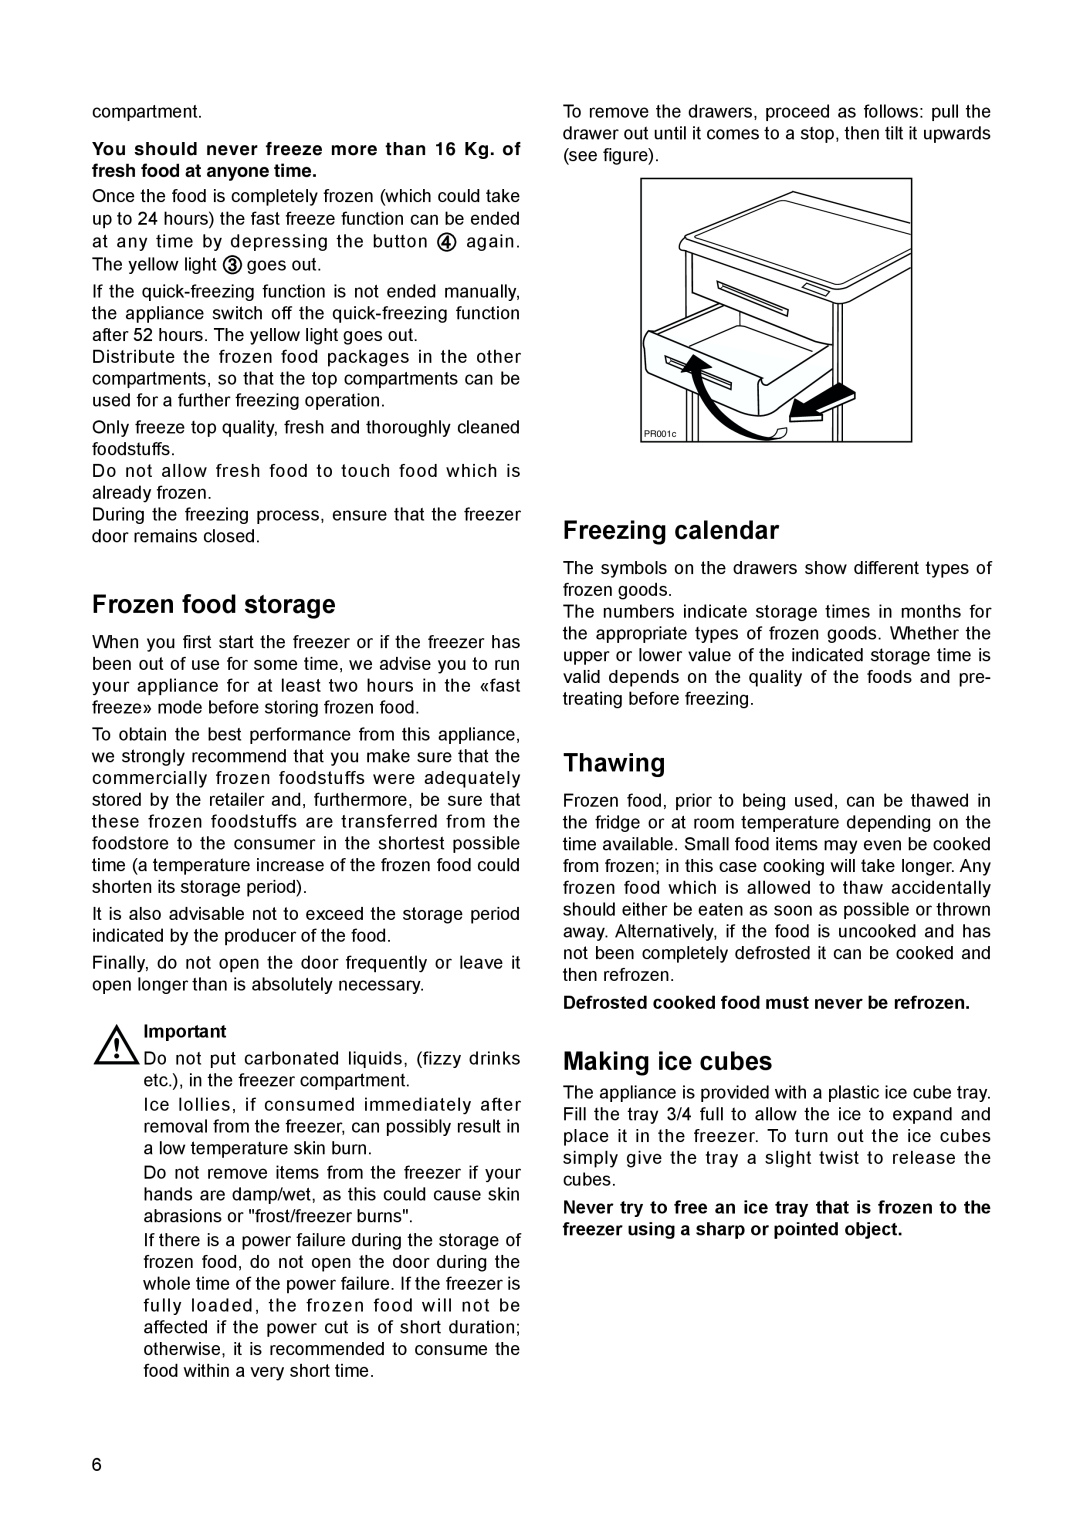 Electrolux EUN 12300 manual Frozen food storage, Freezing calendar, Thawing, Making ice cubes 